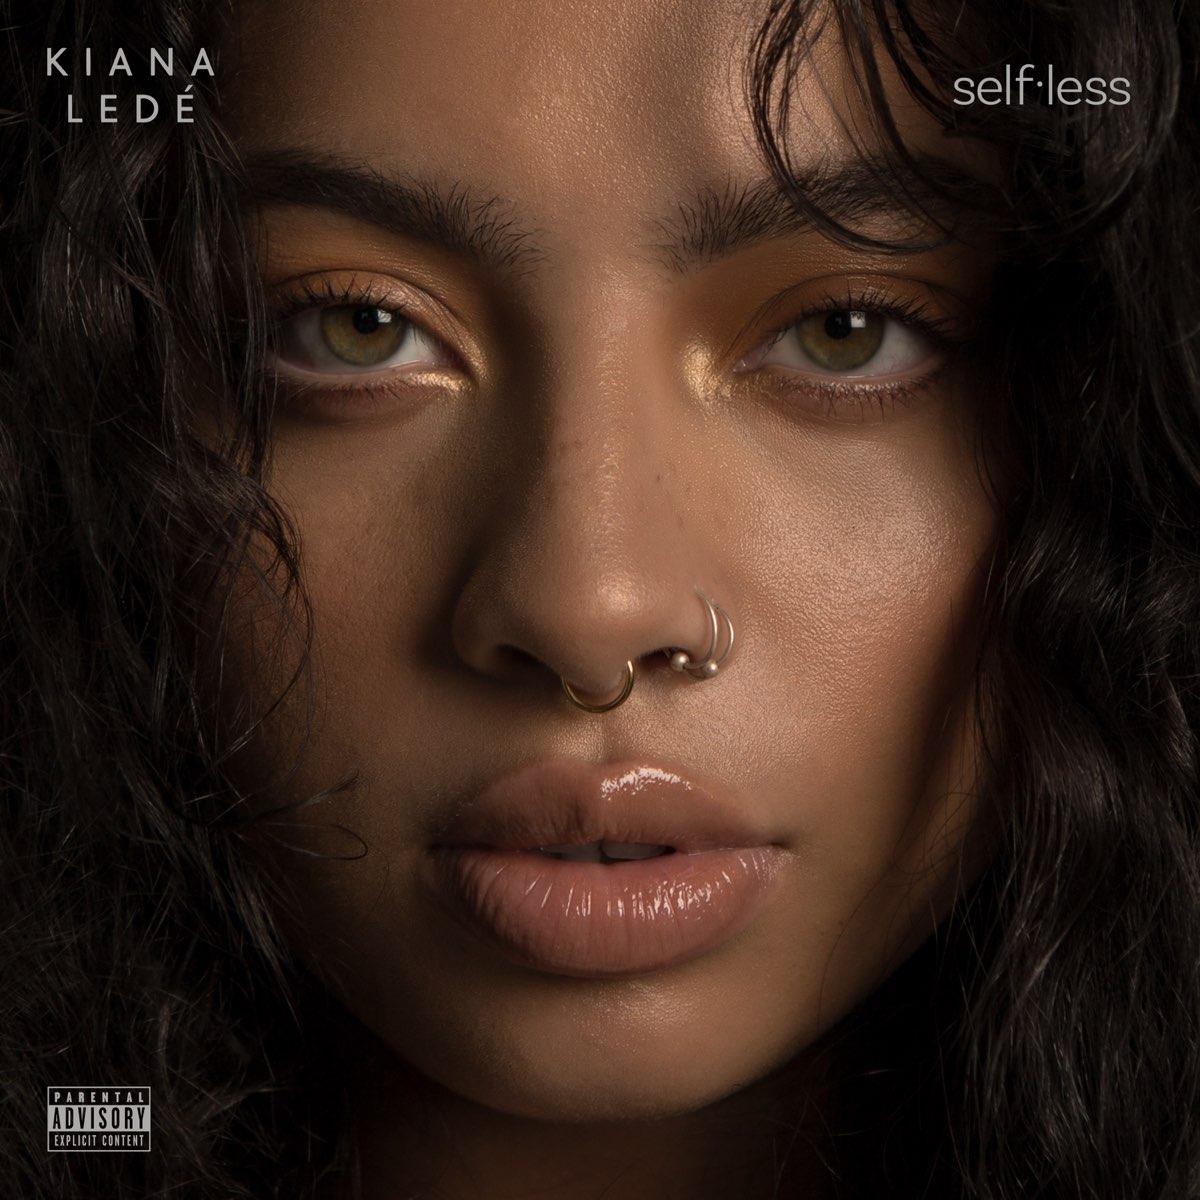 ‎Selfless by Kiana Ledé on Apple Music